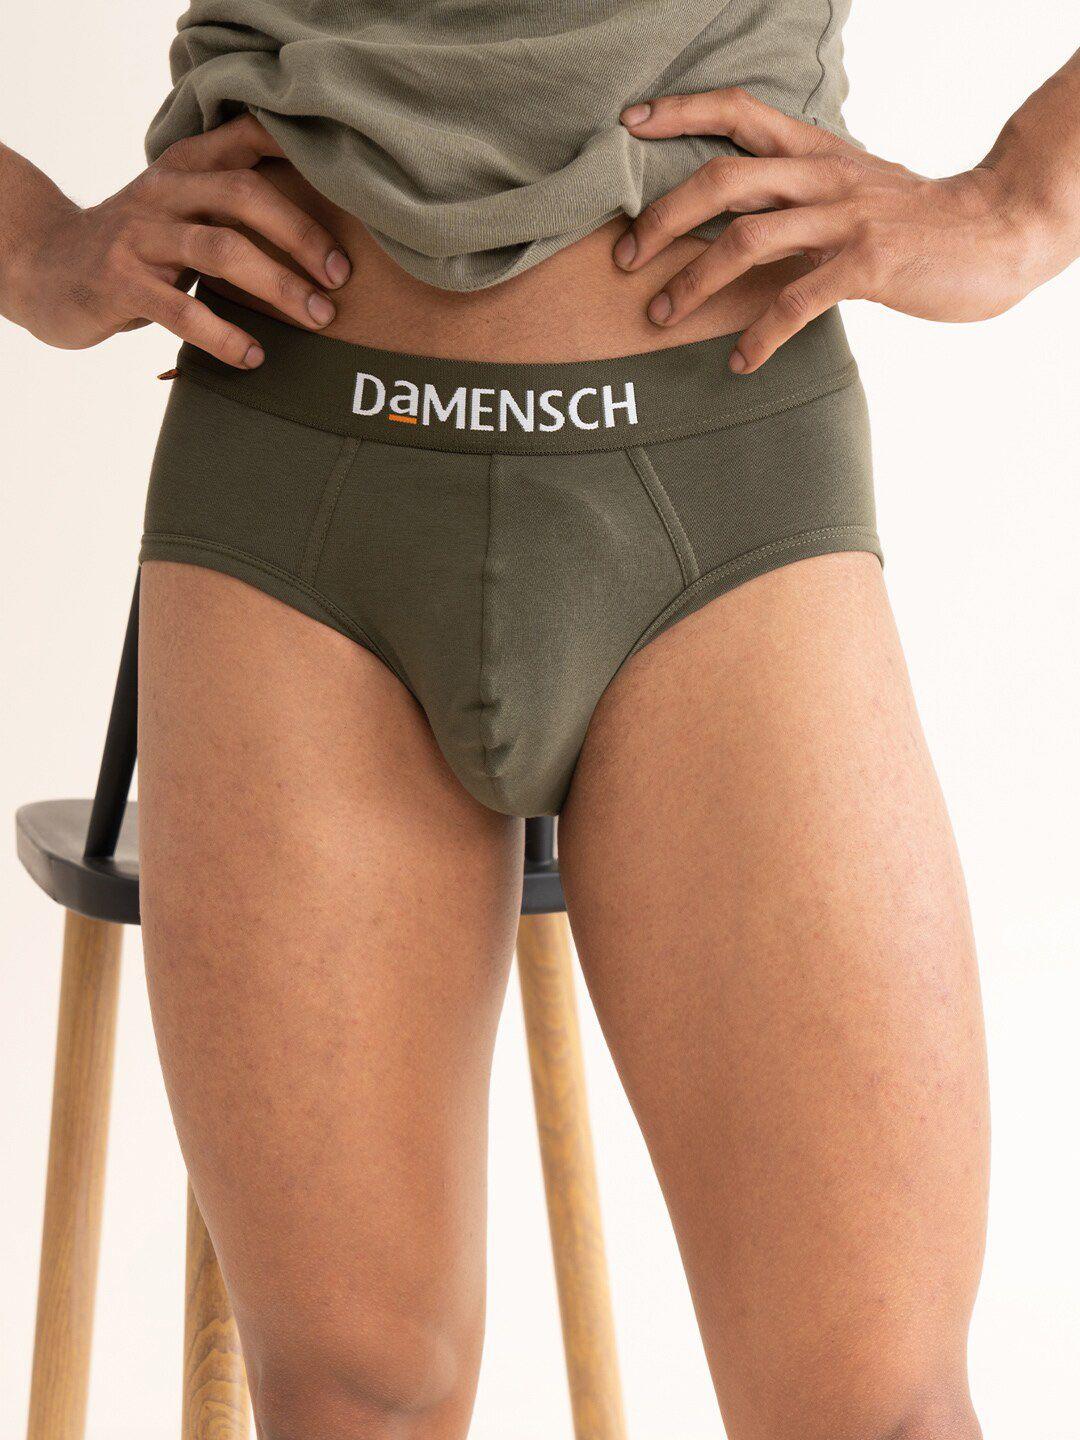 damensch-men-deo-cotton-anti-bacterial-moisture-free-briefs